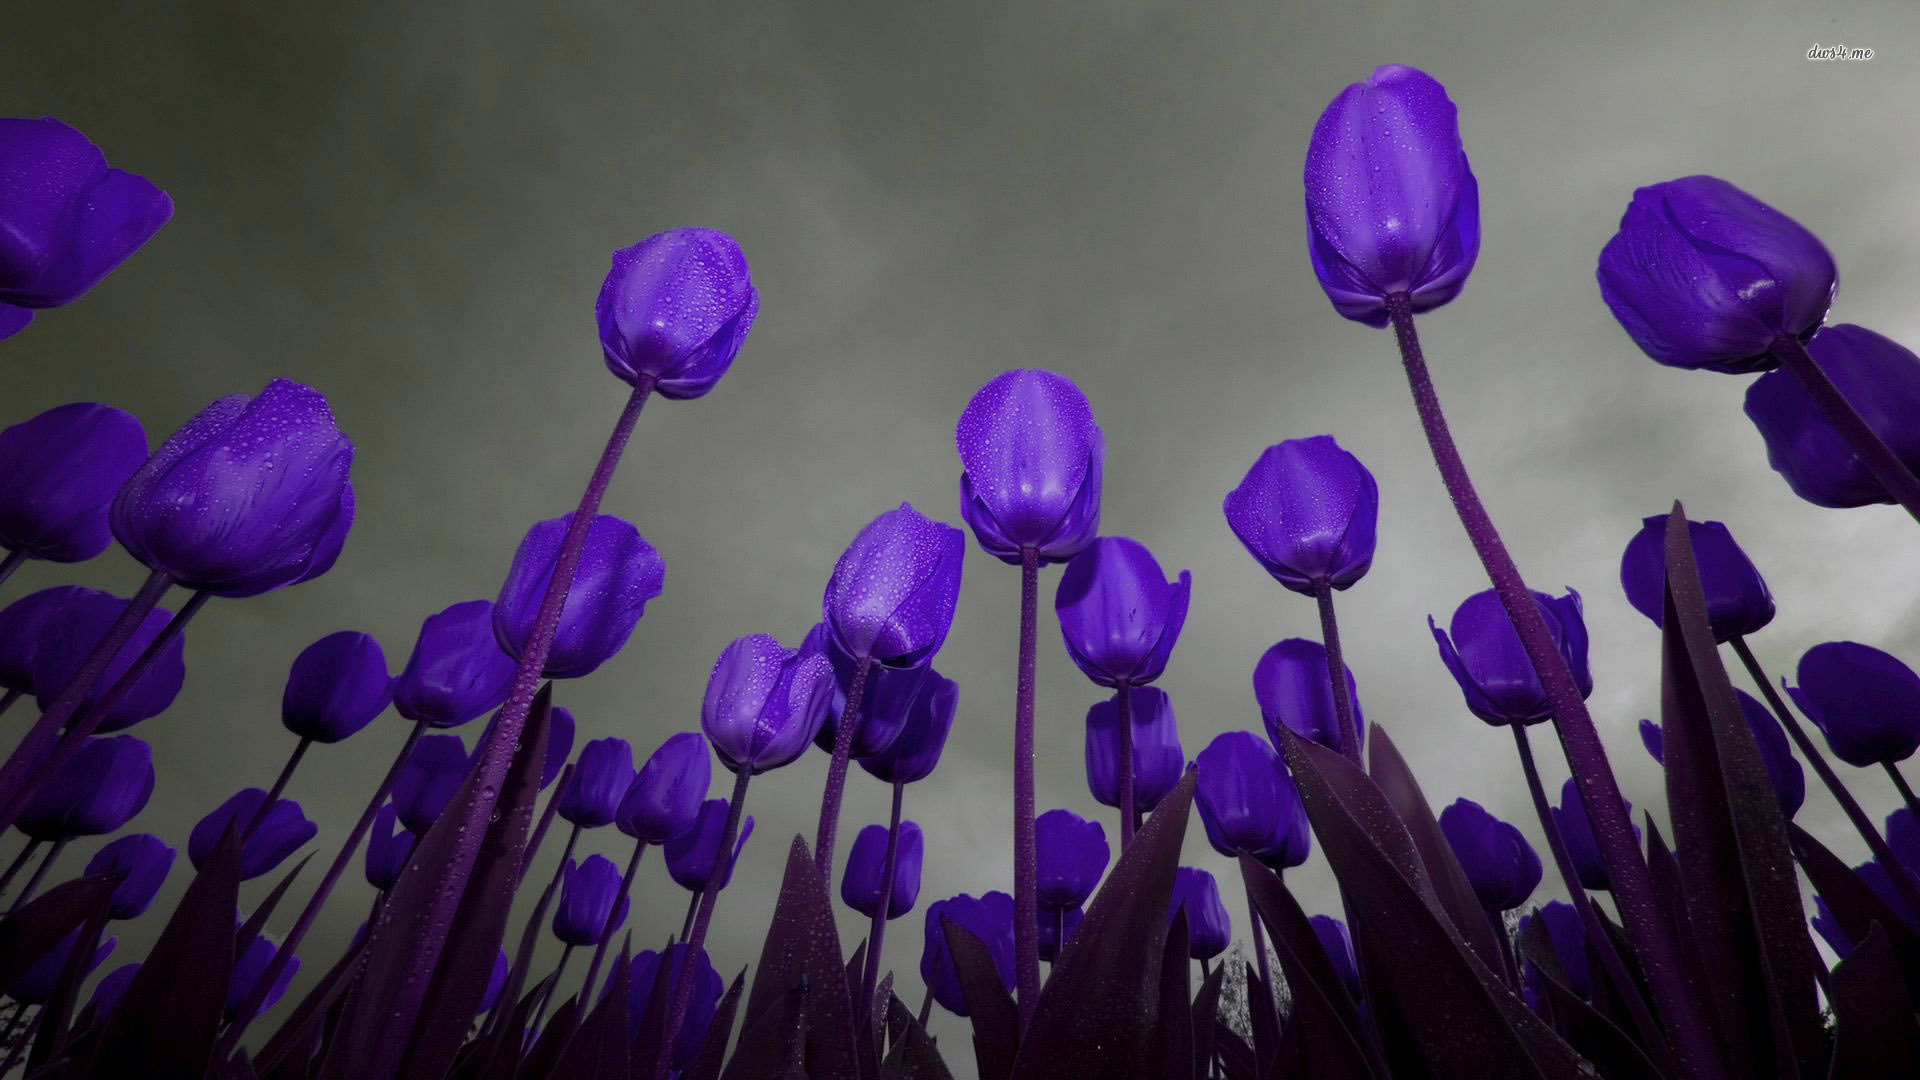 Purple Tulips wallpaper - Flower wallpapers - #28775